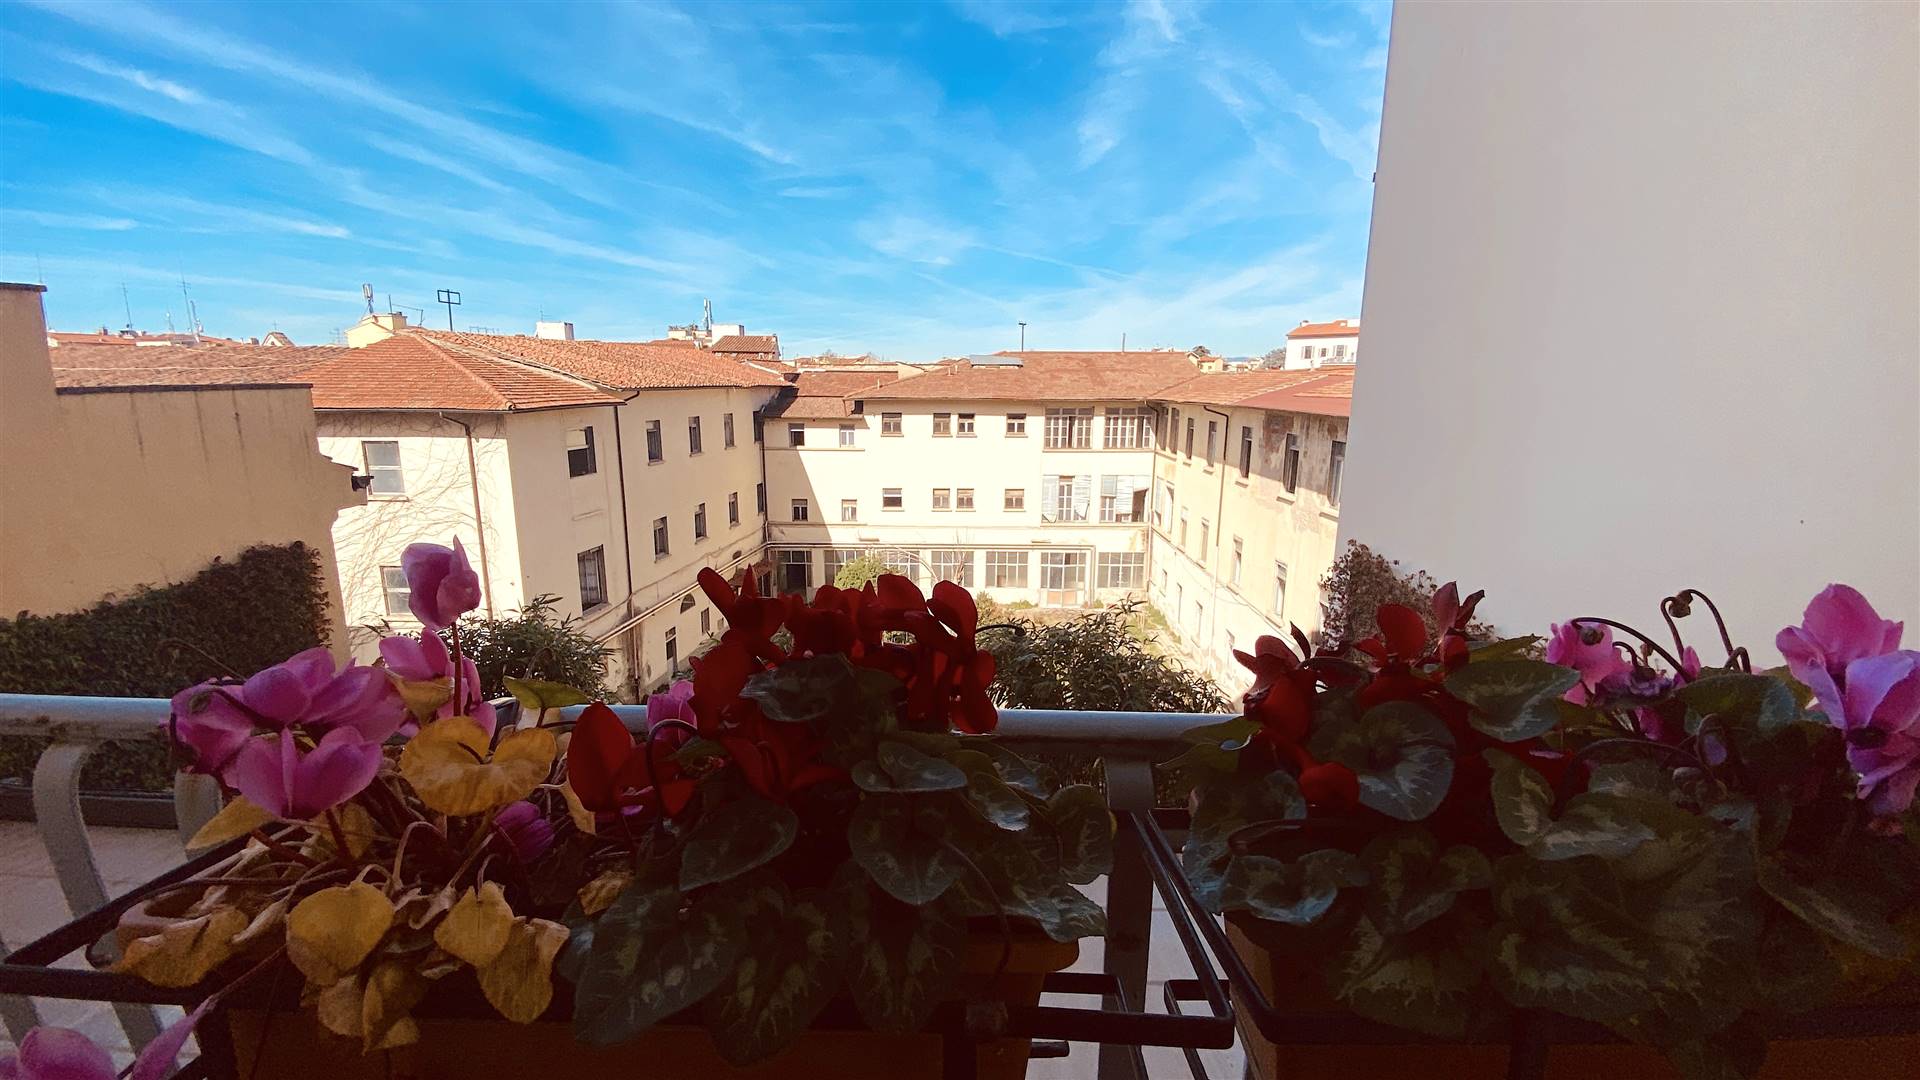 FLORENCIA cerca de la Piazza San Marco, piso de unos 210sqm situado en el tercer piso con ascensor de un bonito edificio elegante muy cerca del 